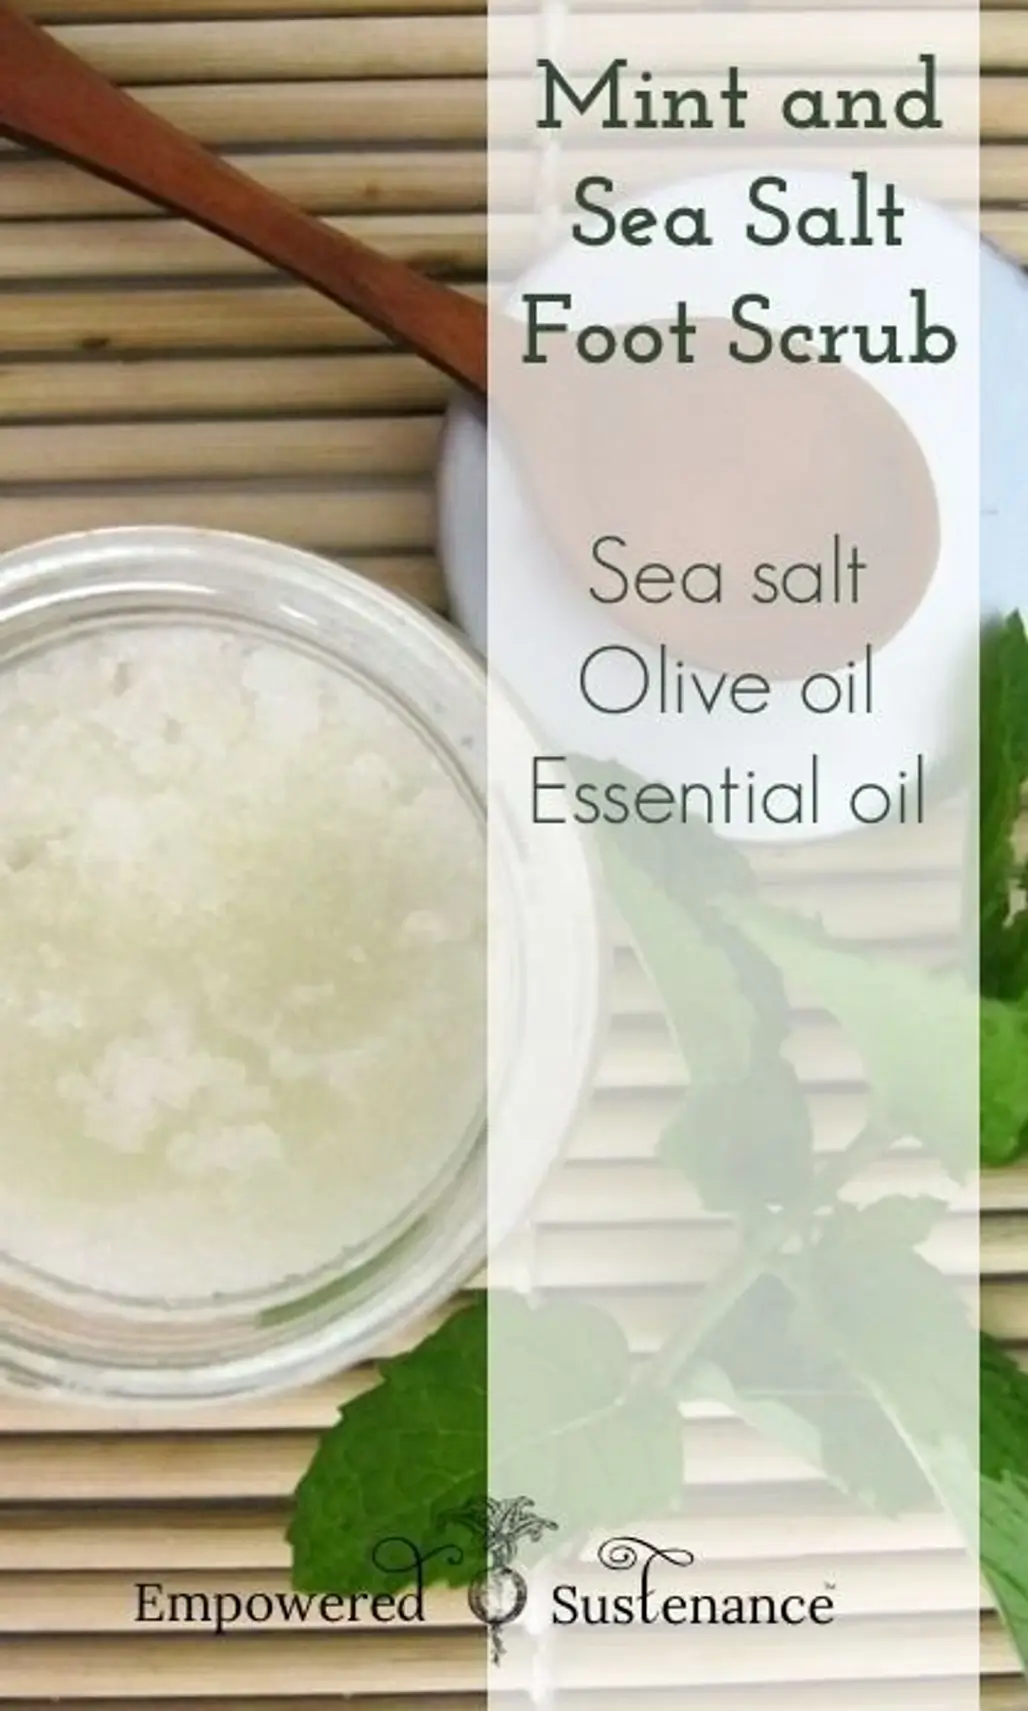 Mint and Sea Salt Foot Scrub